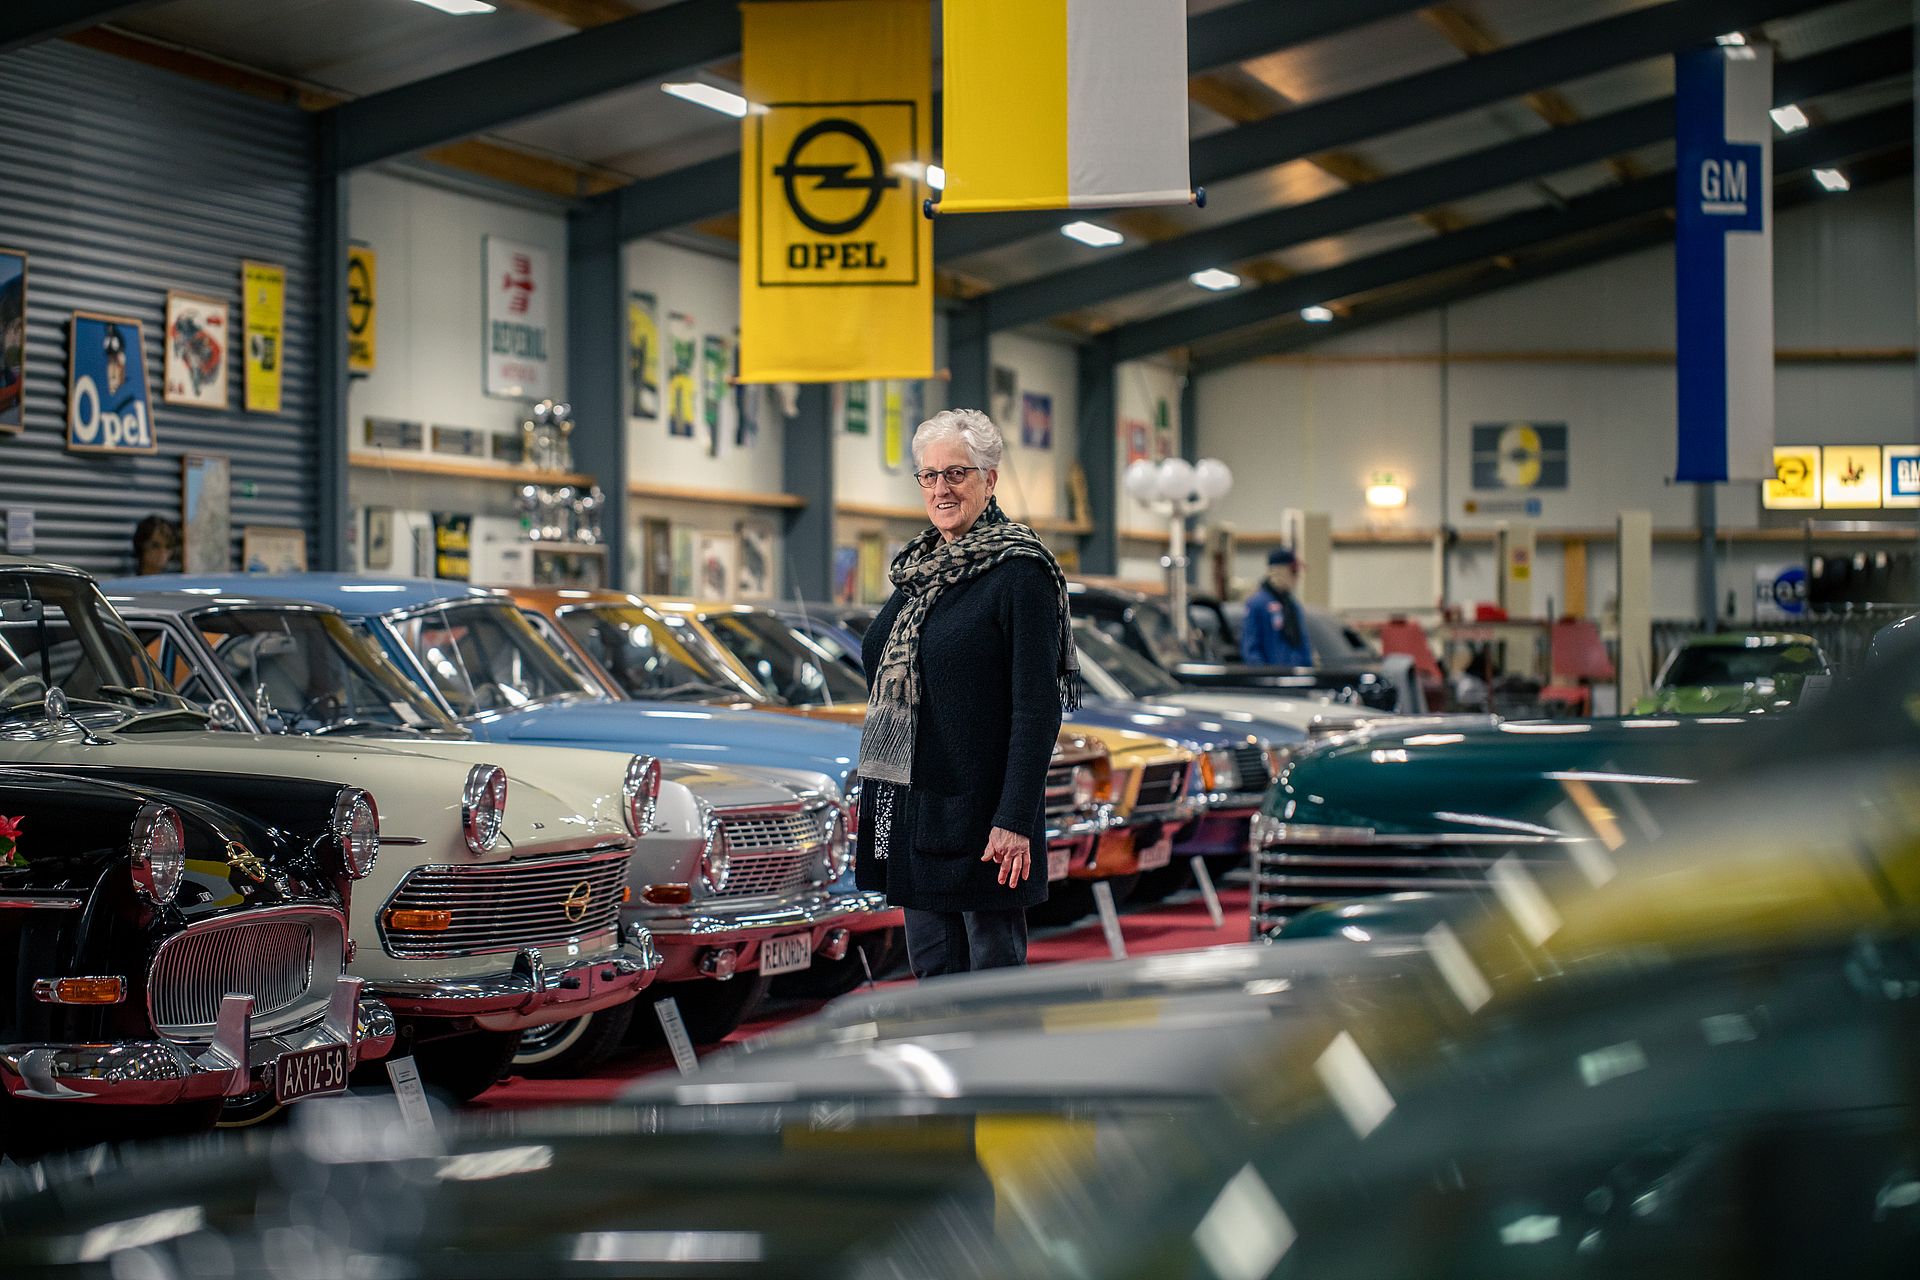 Lees ook: Gonnie runt het Opel-museum in het Friese Tijnje